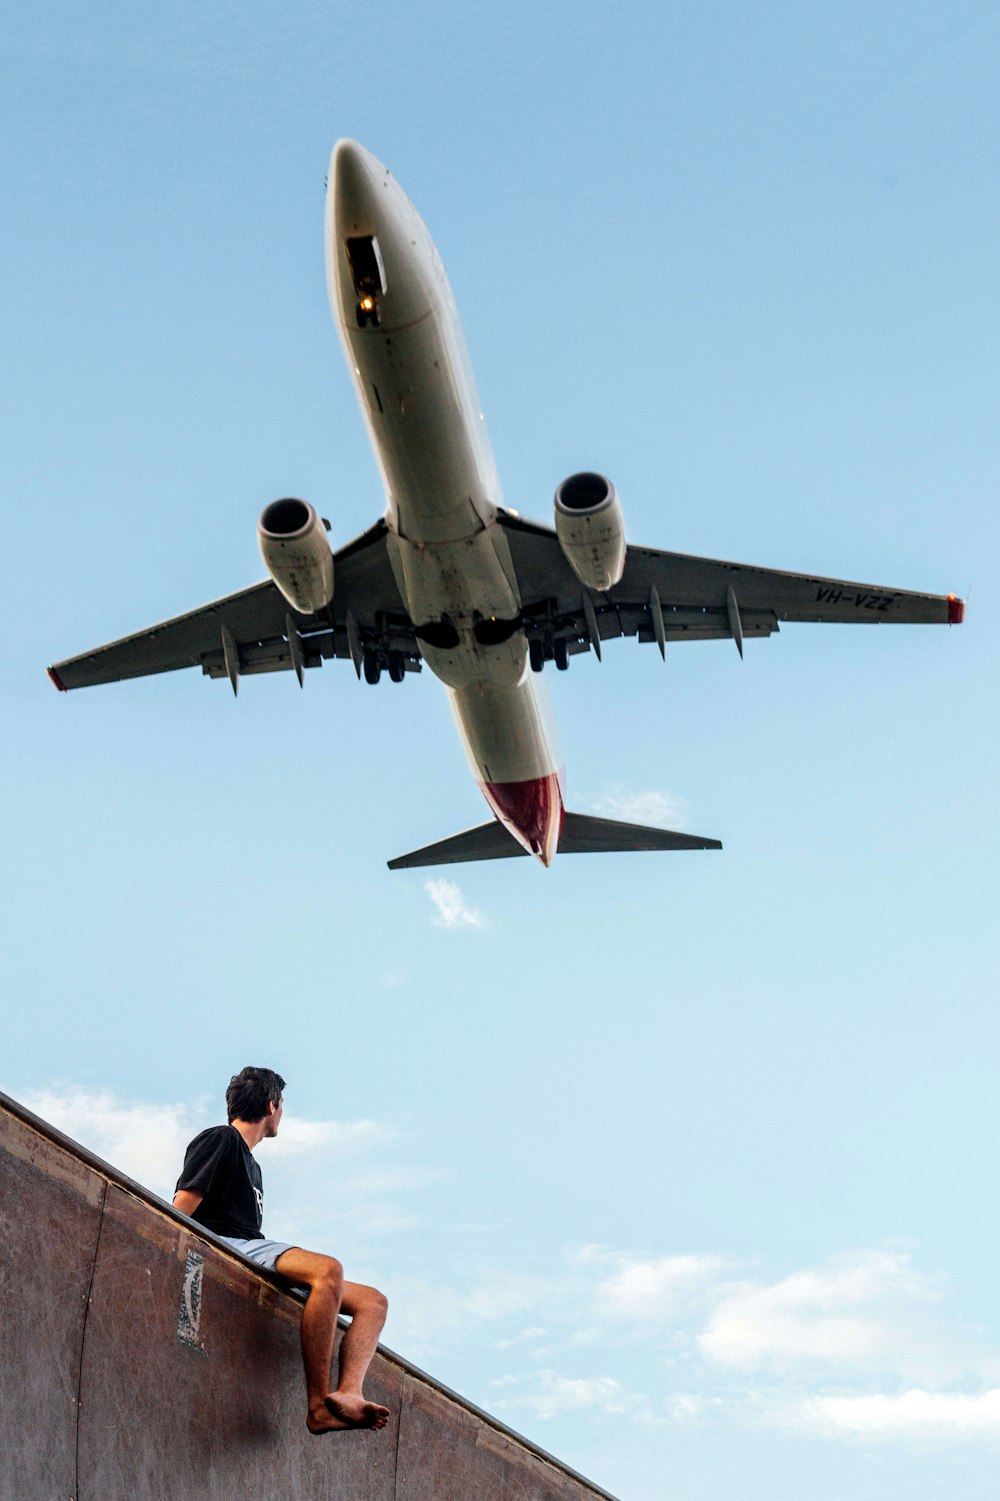 Photographie en contre-plongée d’un homme portant une chemise noire sous un avion blanc et gris